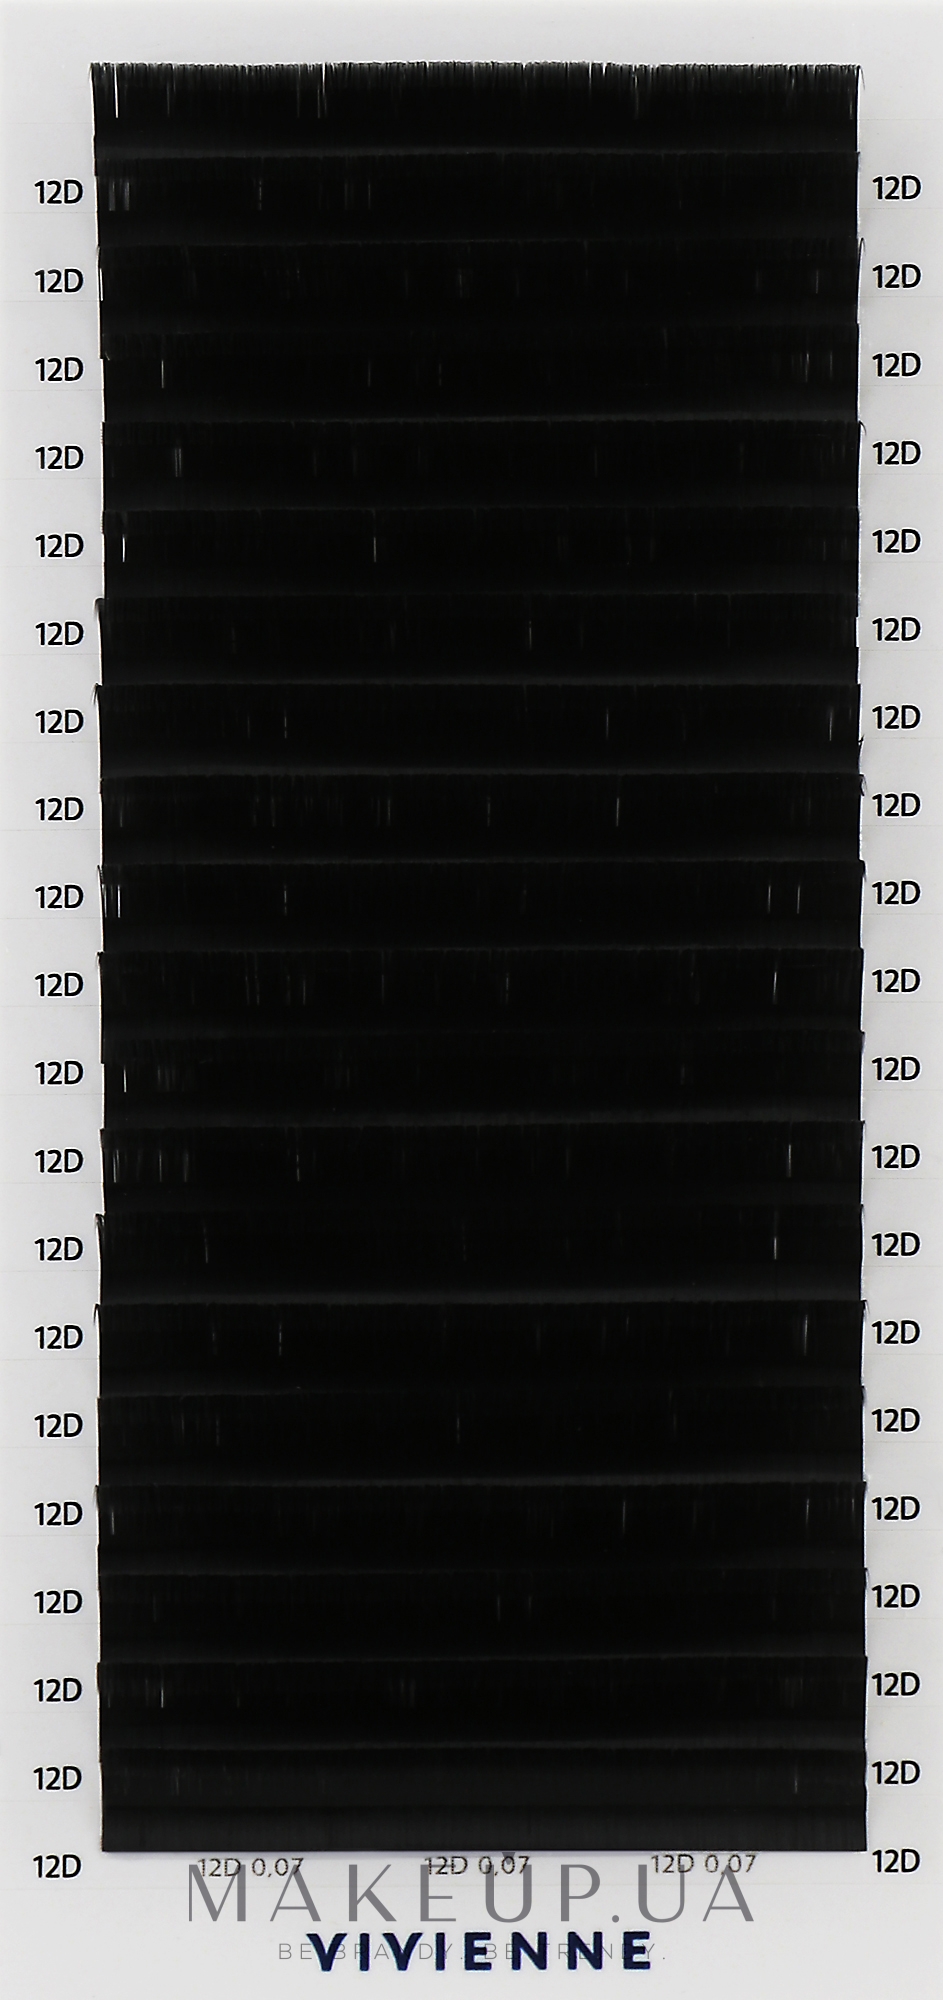 Накладные ресницы "Elite", черные, 20 линий (0,07, D, 12), эко упаковка - Vivienne — фото 1уп